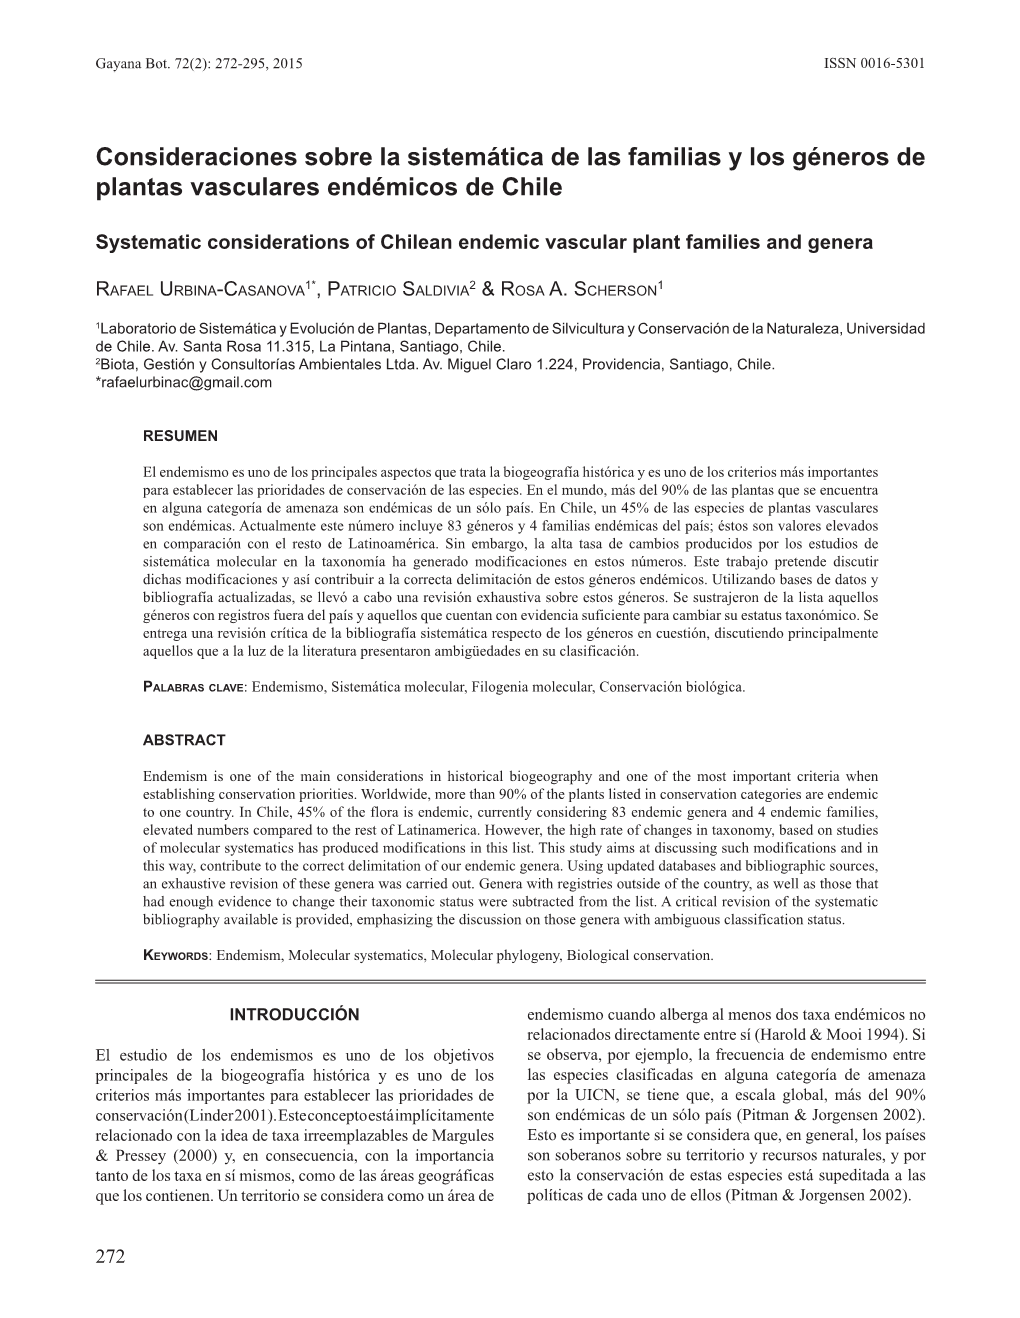 Consideraciones Sobre La Sistemática De Las Familias Y Los Géneros De Plantas Vasculares Endémicos De Chile